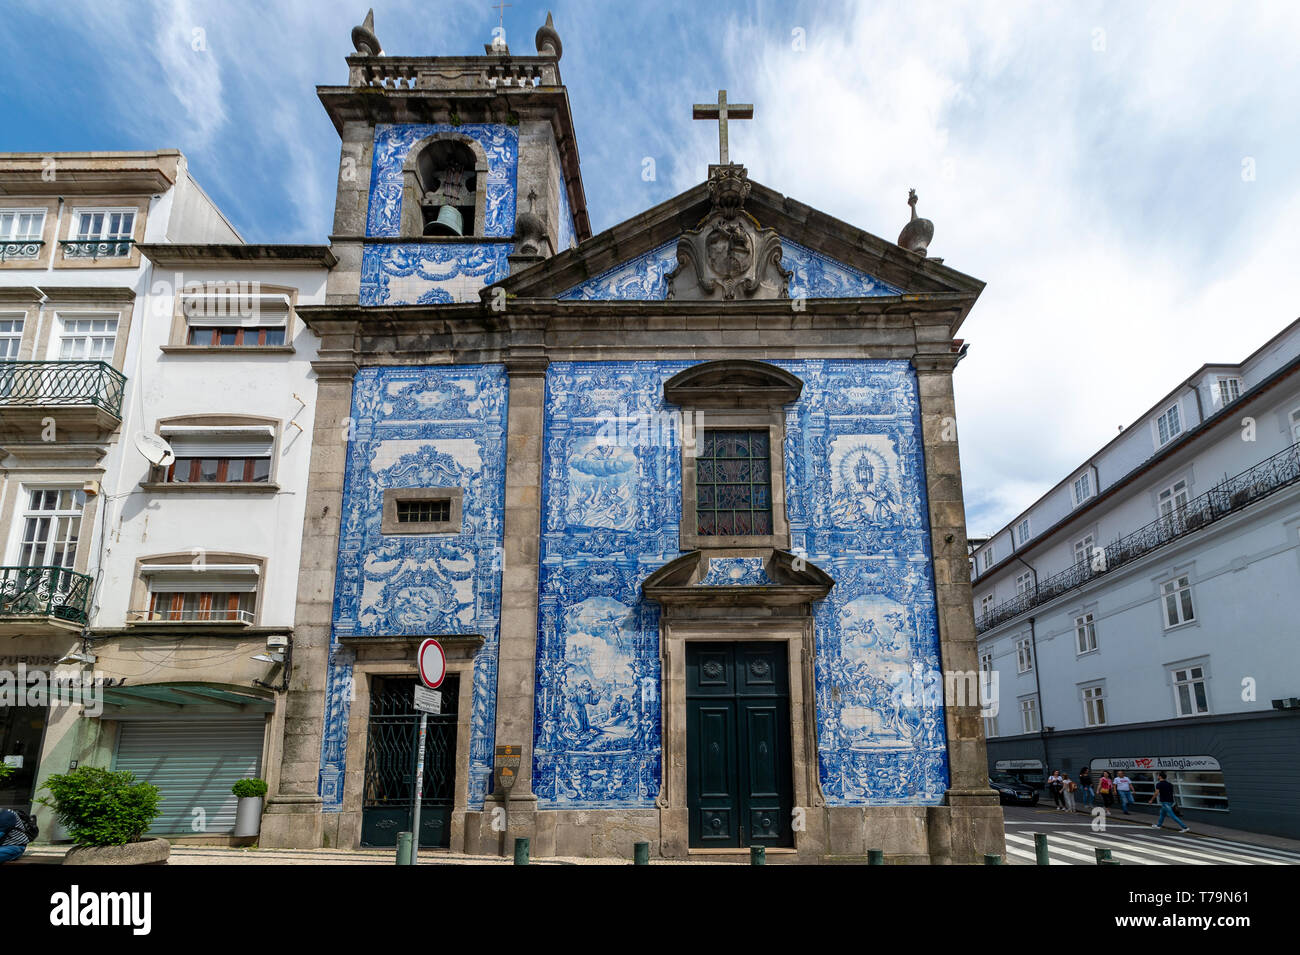 Capela das Almas Church in Porto, Portugal. Blue azulejo tiled exterior facade. Stock Photo